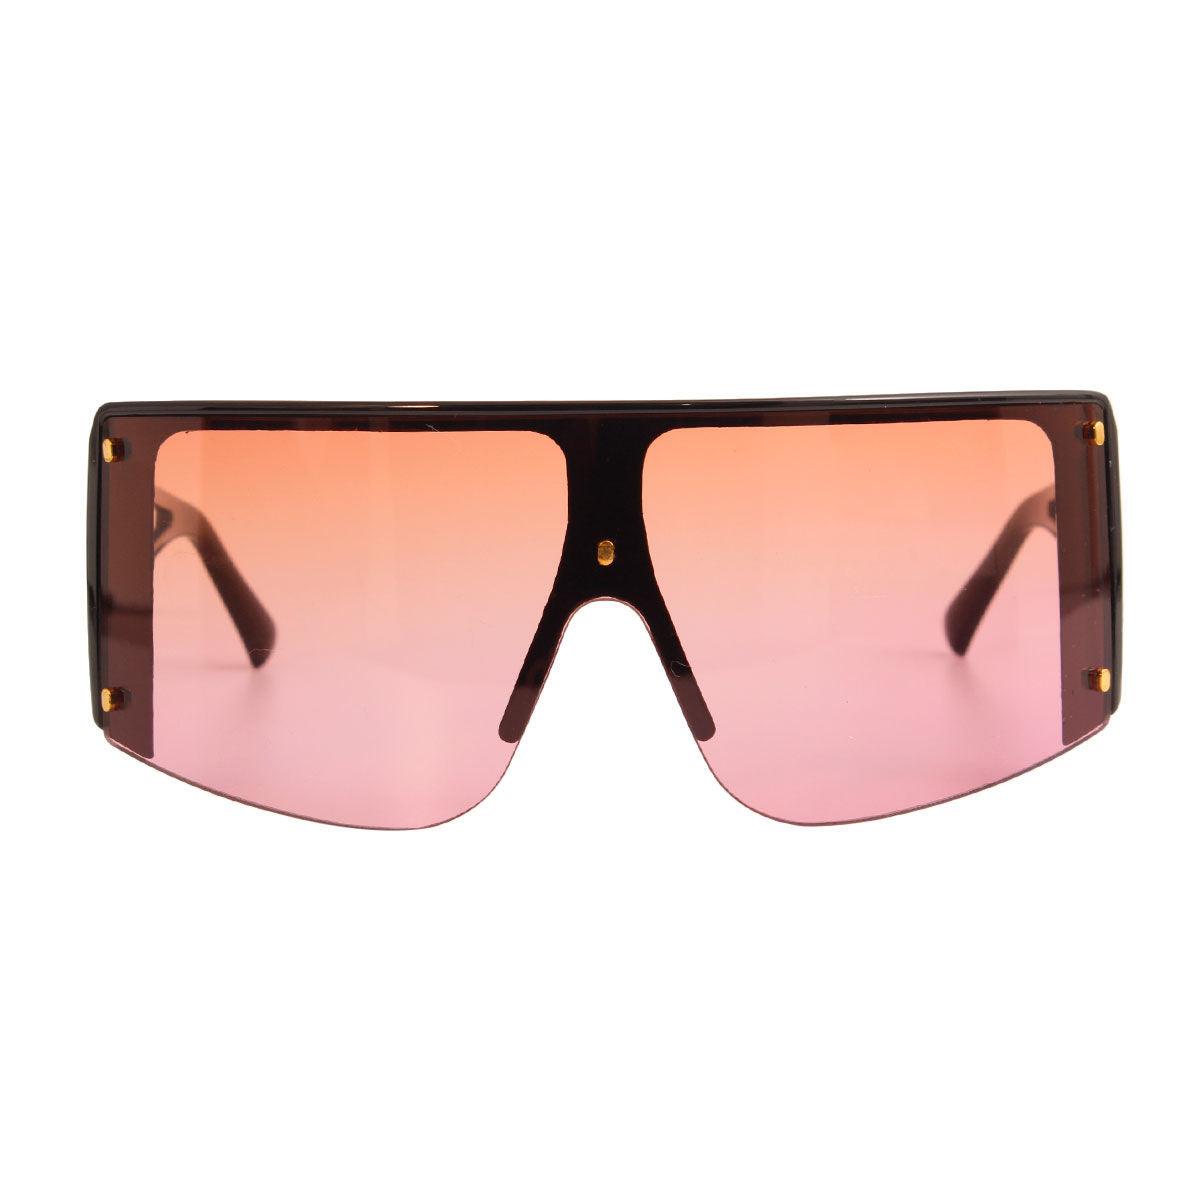 Black Frame Tint Visor Elevate Stylish Sunglasses for Women